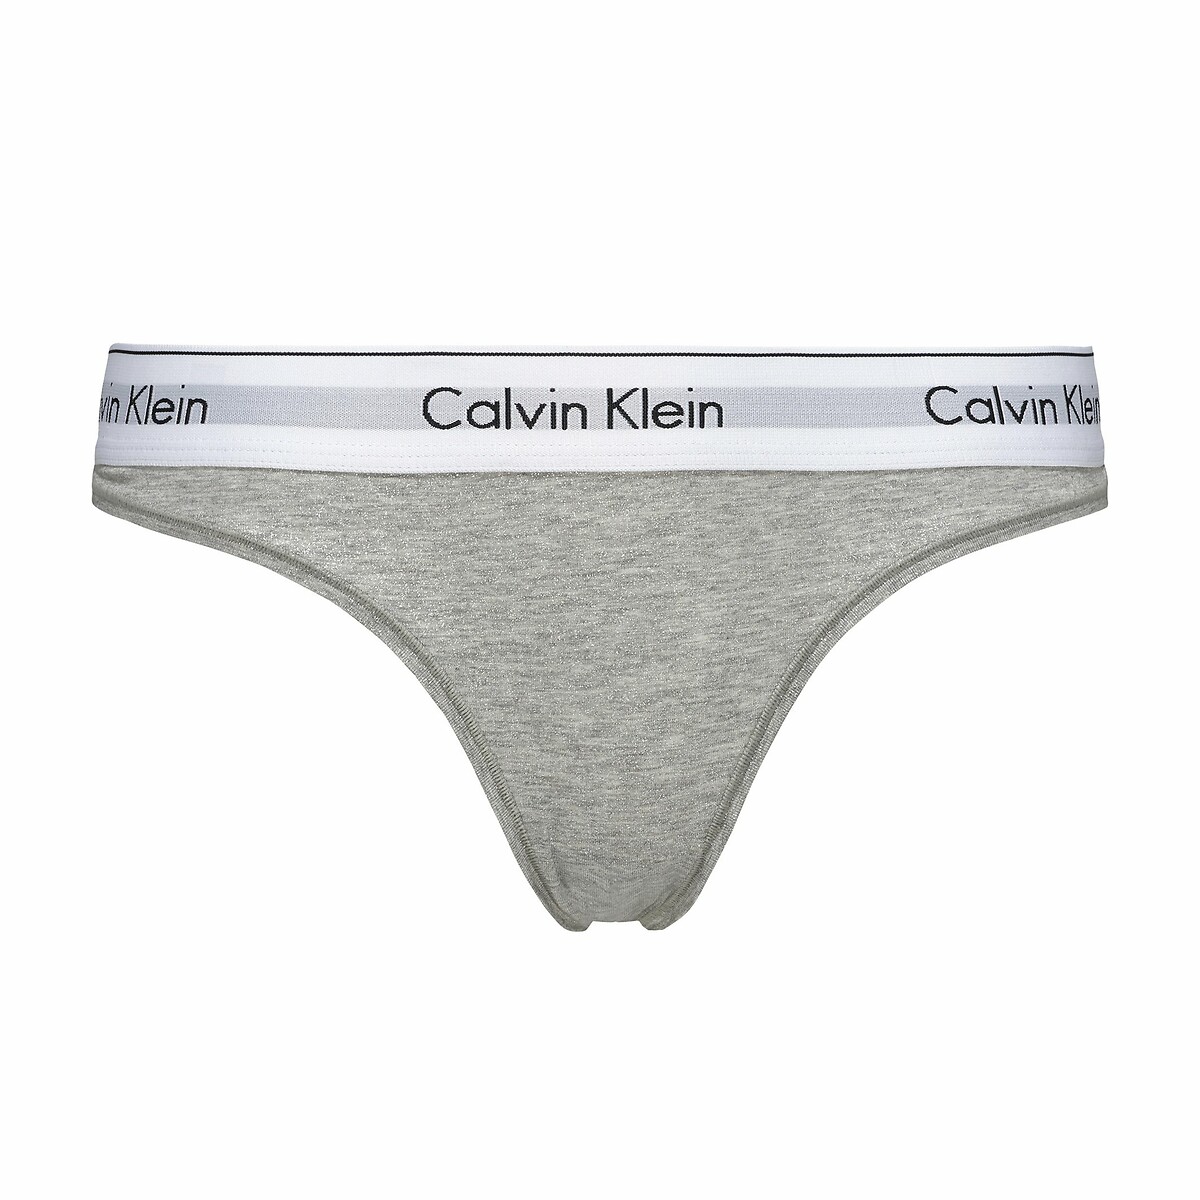 Modern cotton signature thong Calvin Klein Underwear | La Redoute